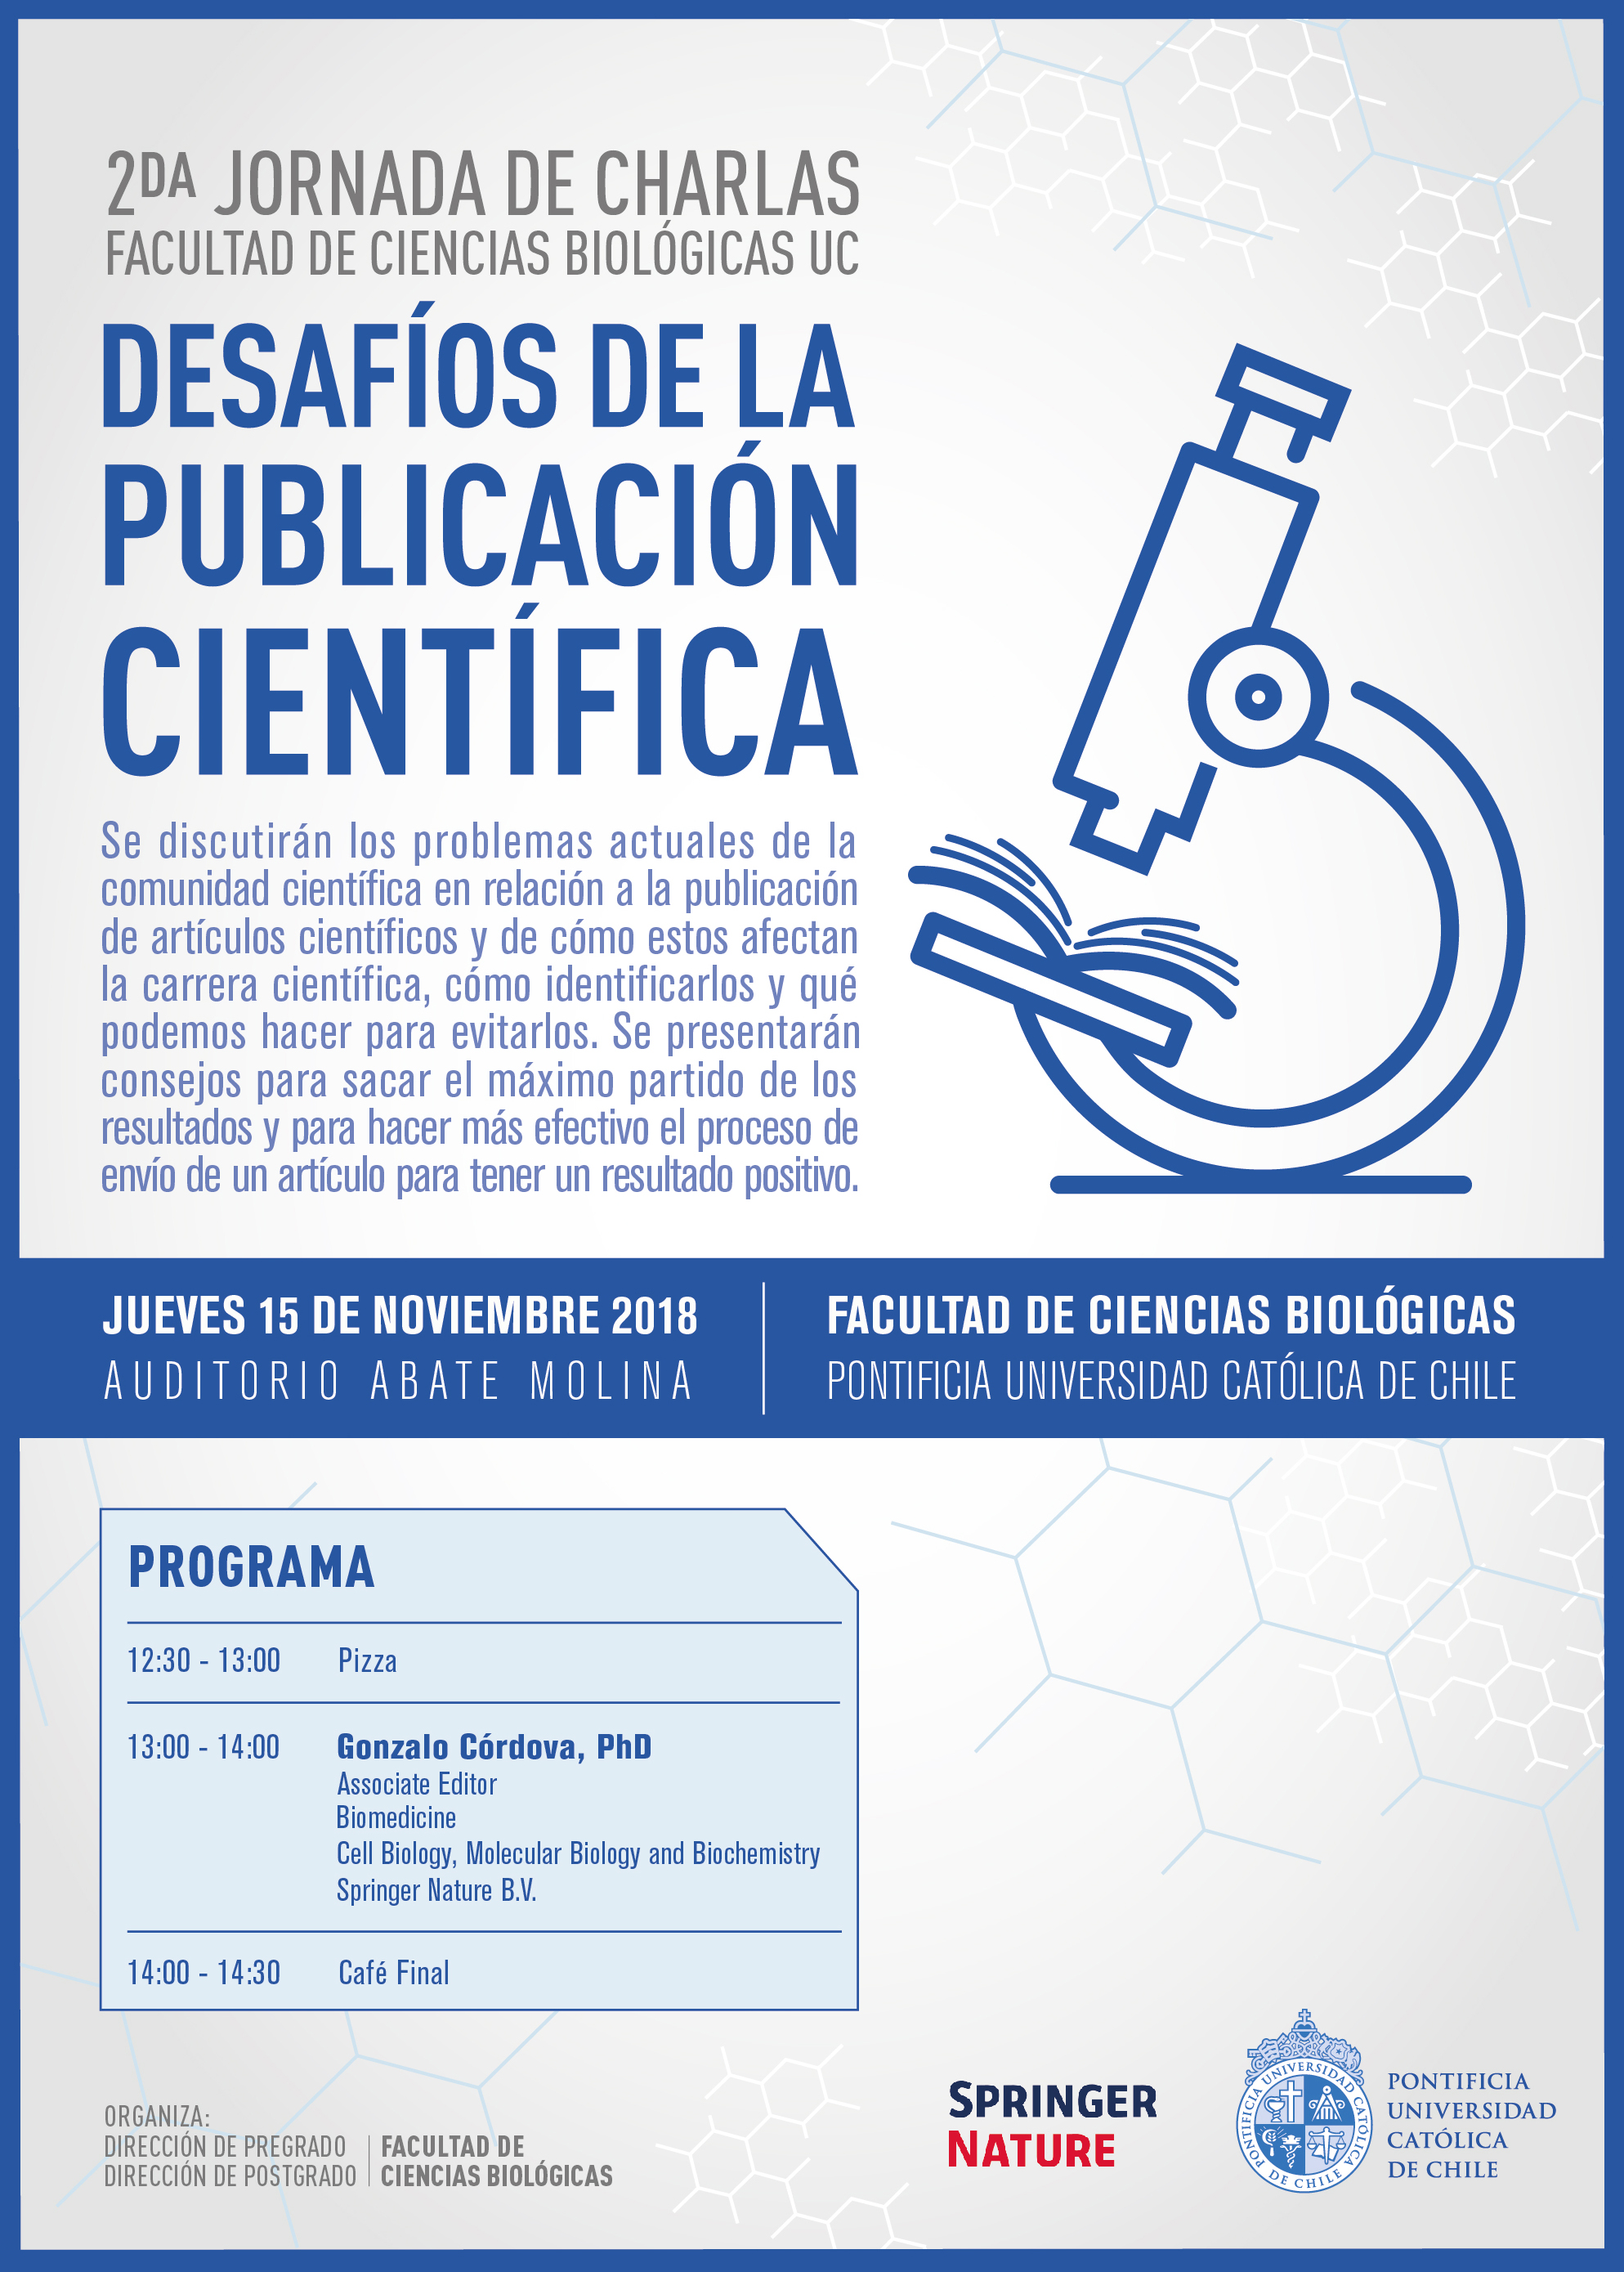 2da Jornada de Charlas Facultad de Ciencias Biológicas UC - Desafíos de la Publicación Científica